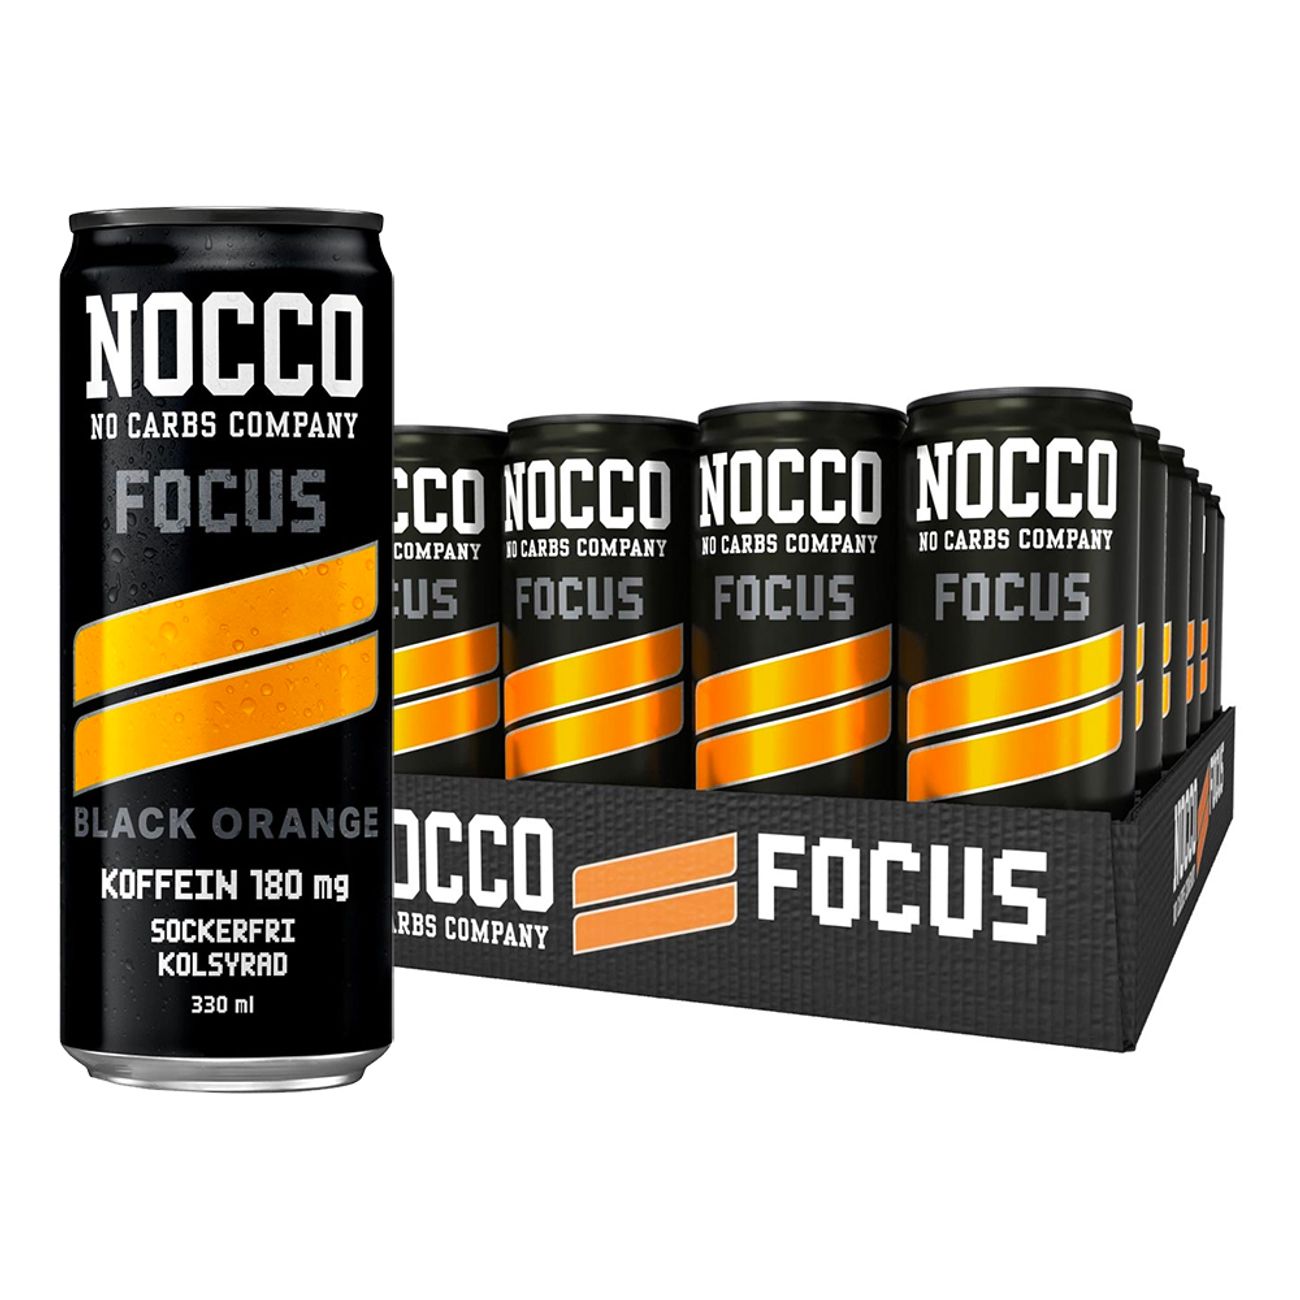 nocco-focus-black-orange-92307-2